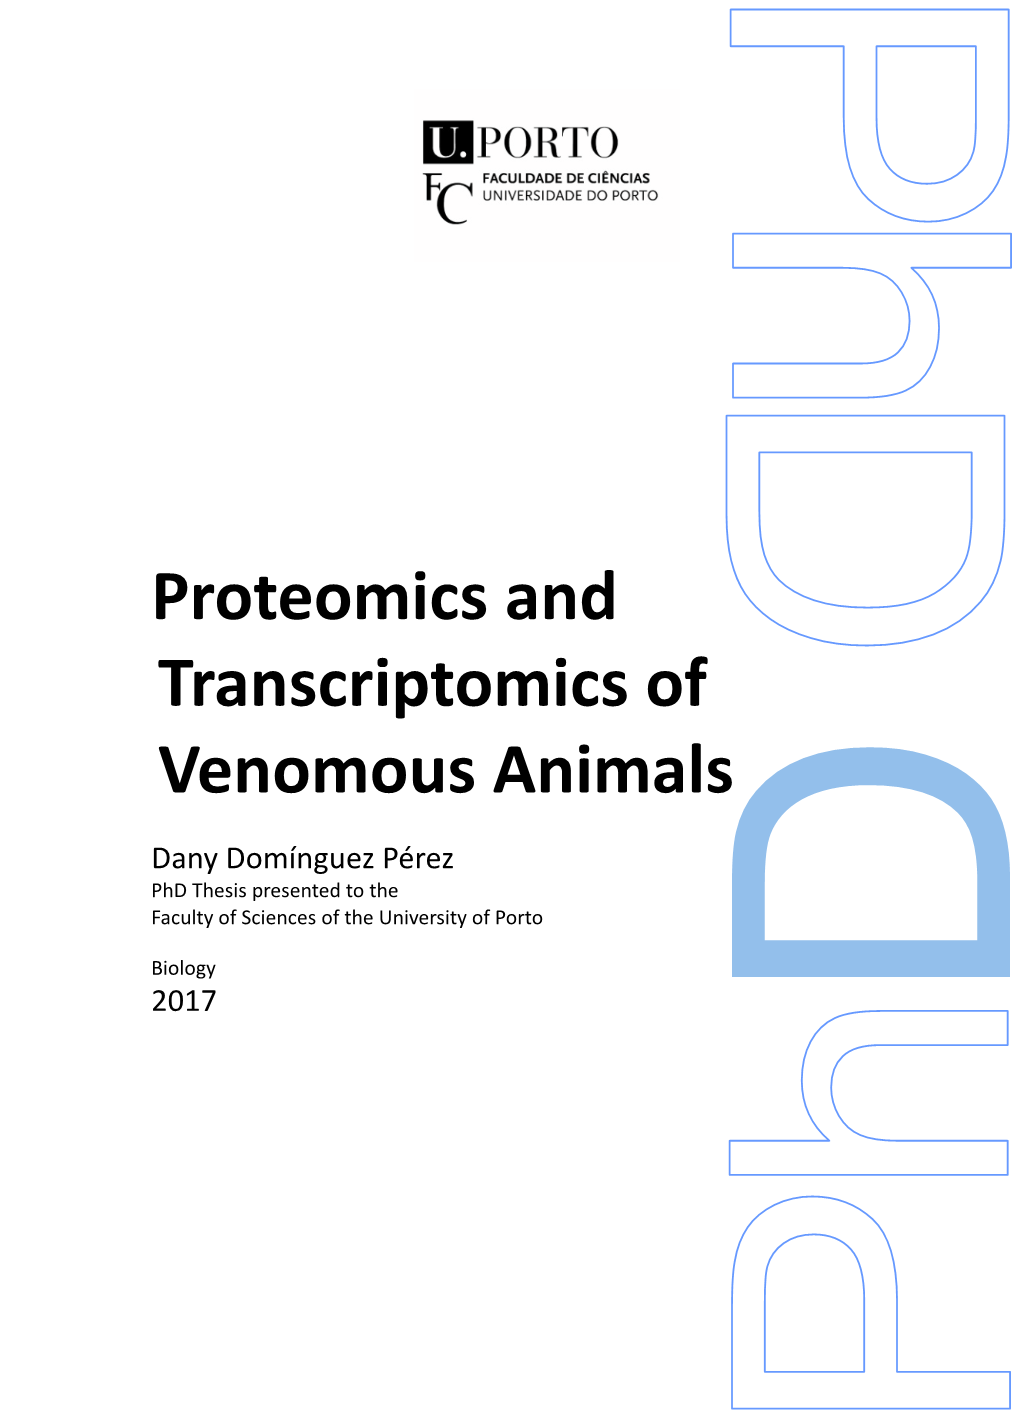 Proteomics and Transcriptomics of Venomous Animals